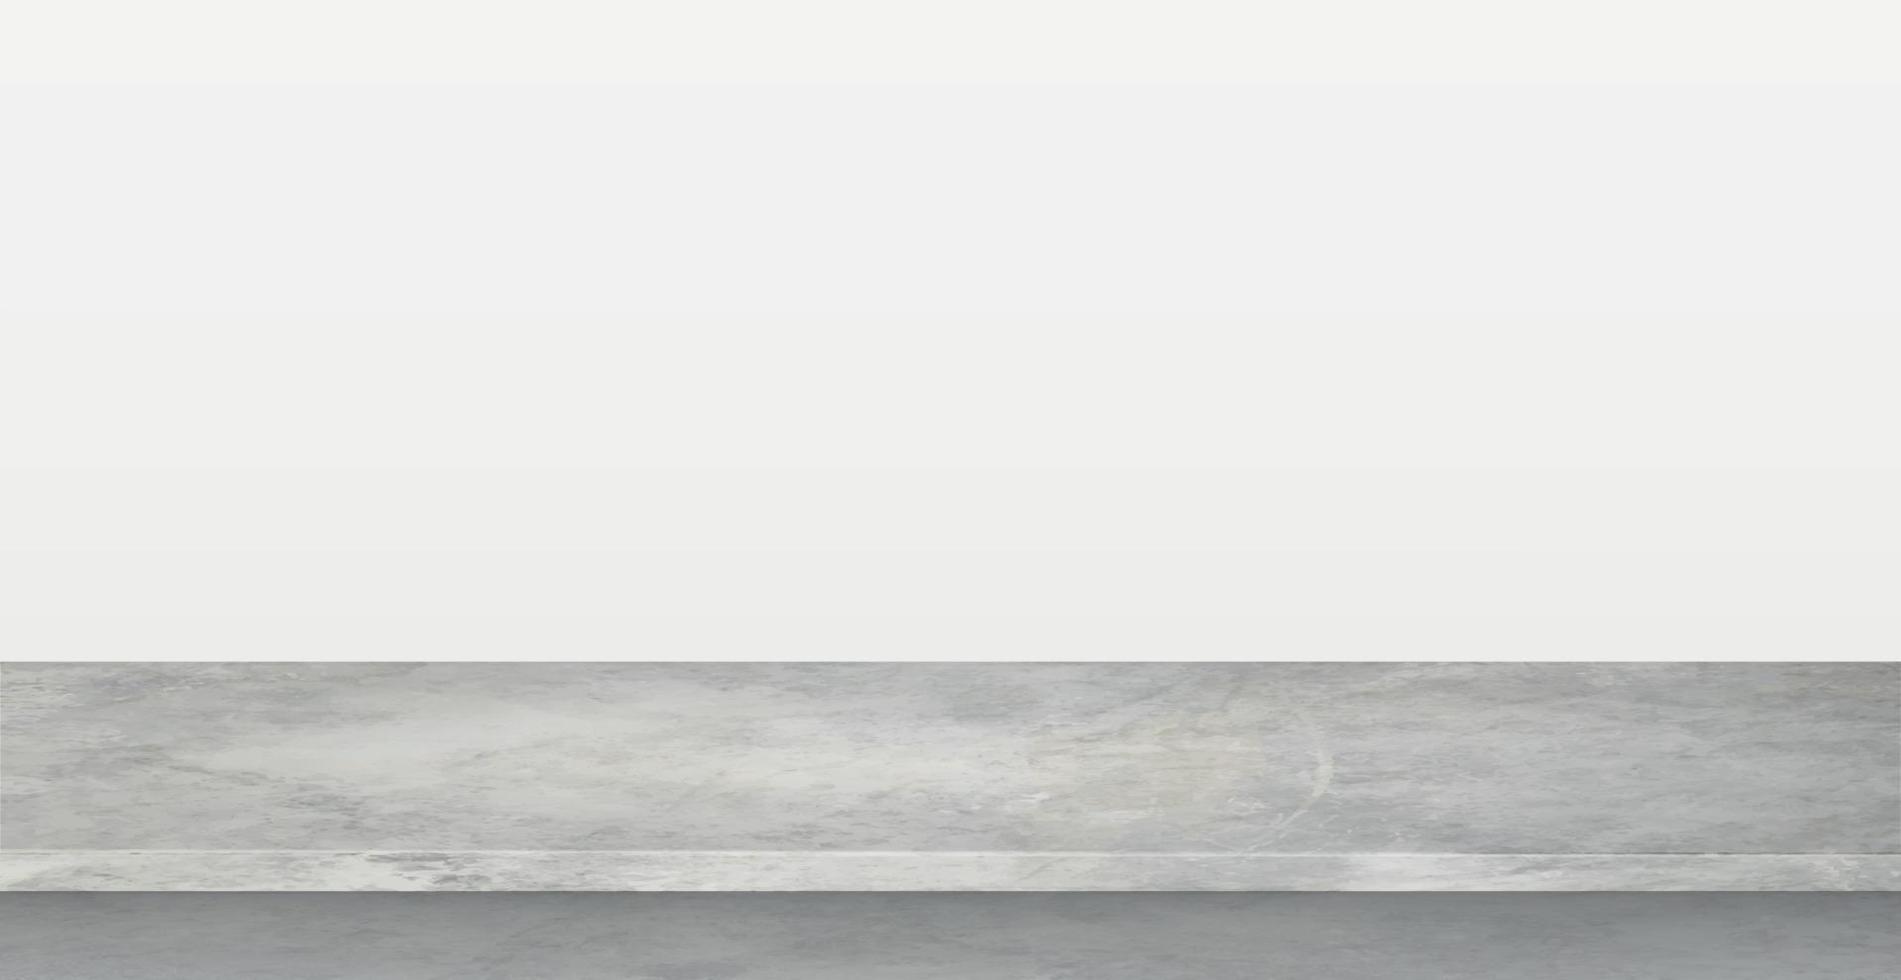 grijze betonnen stenen aanrecht op witte panoramische achtergrond, promotionele websjabloon - vector